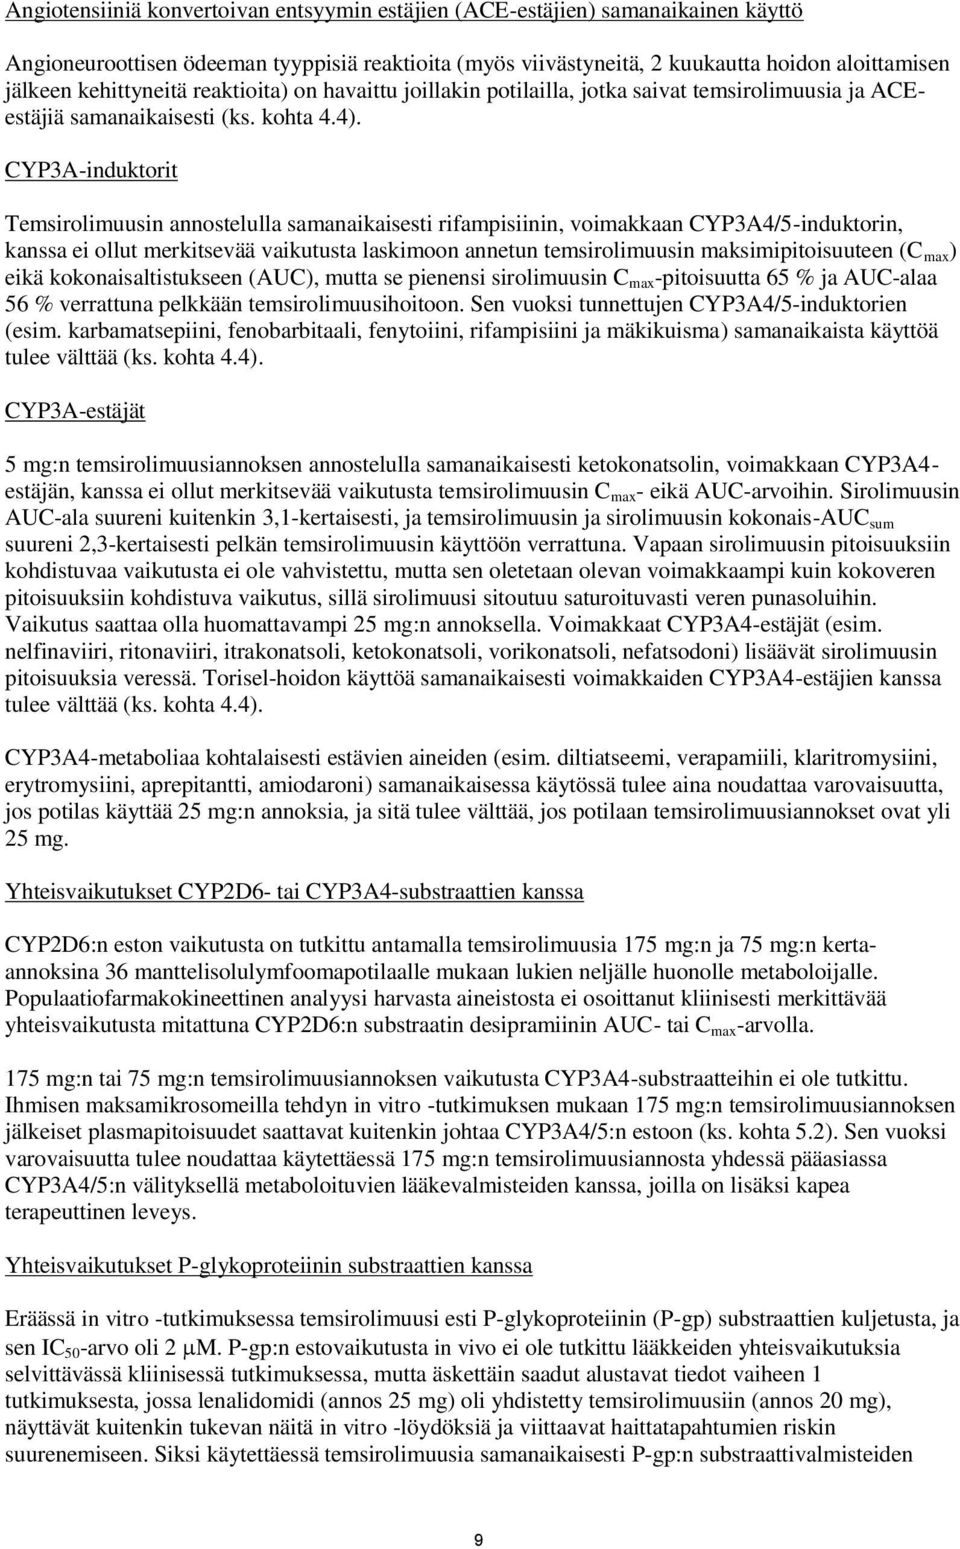 CYP3A-induktorit Temsirolimuusin annostelulla samanaikaisesti rifampisiinin, voimakkaan CYP3A4/5-induktorin, kanssa ei ollut merkitsevää vaikutusta laskimoon annetun temsirolimuusin